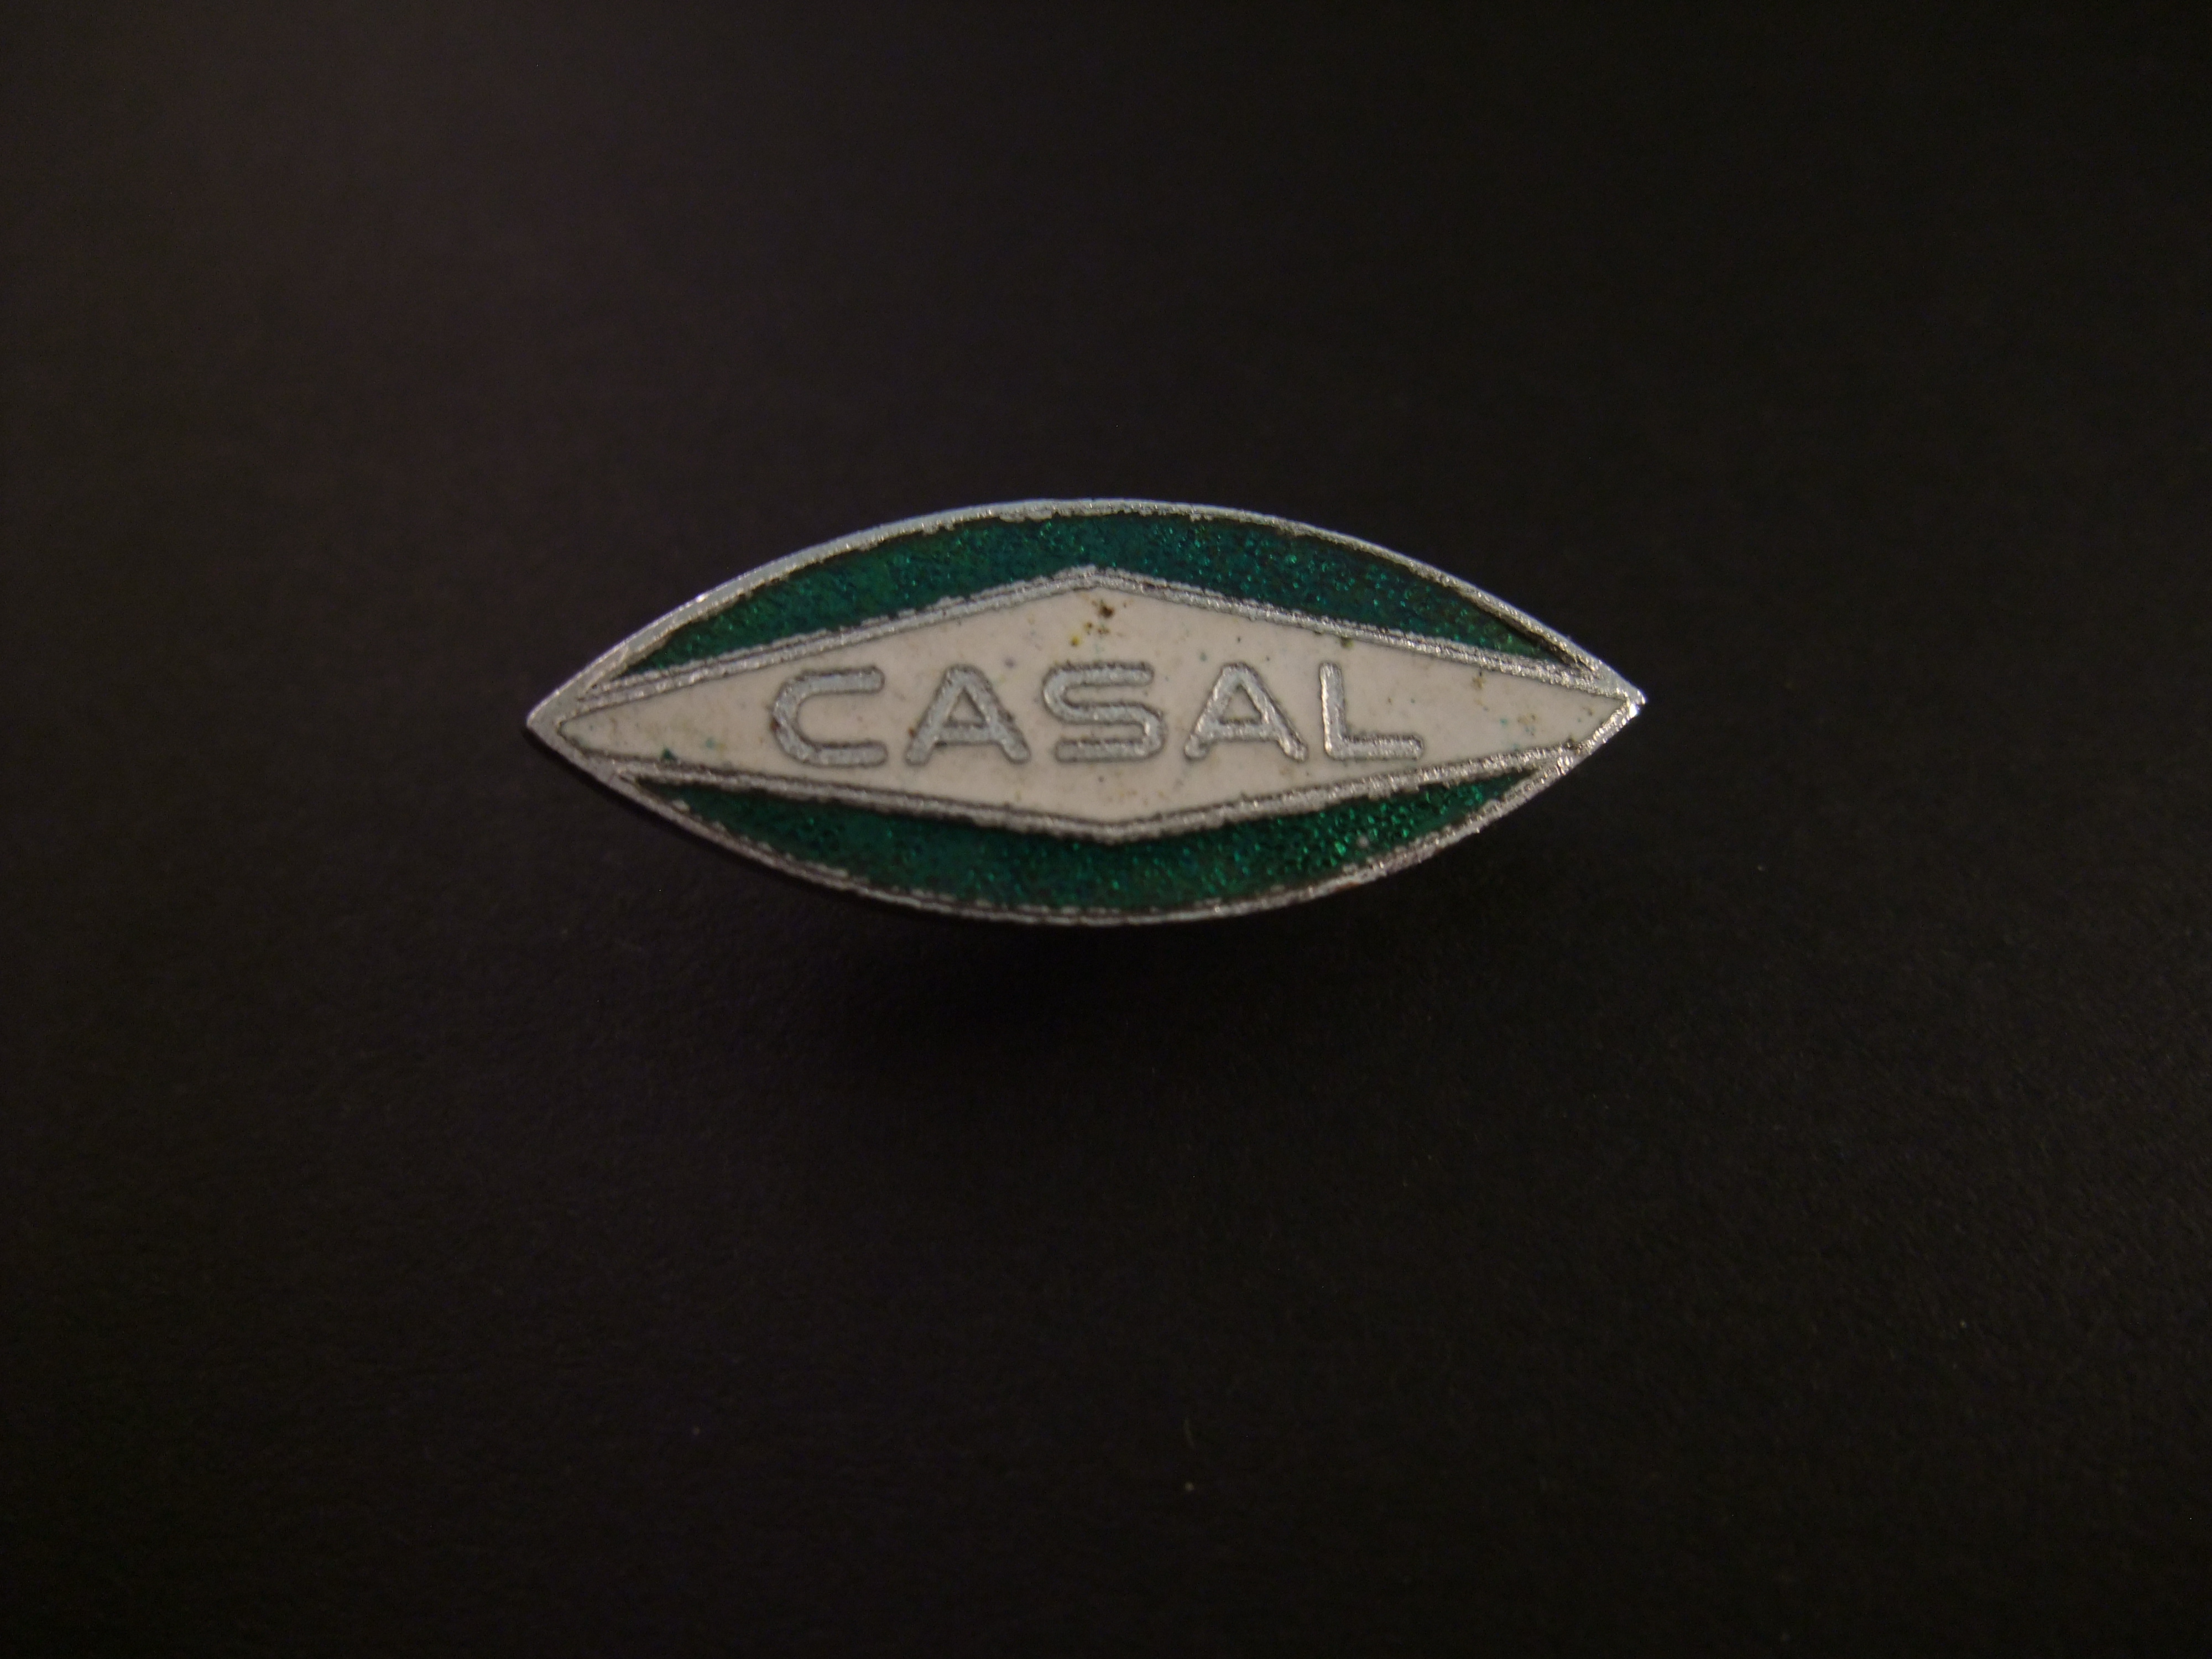 Casal Portugees merk van motorfietsen ( in 1953 kleine stationaire motoren voor agrarische bedrijven)logo